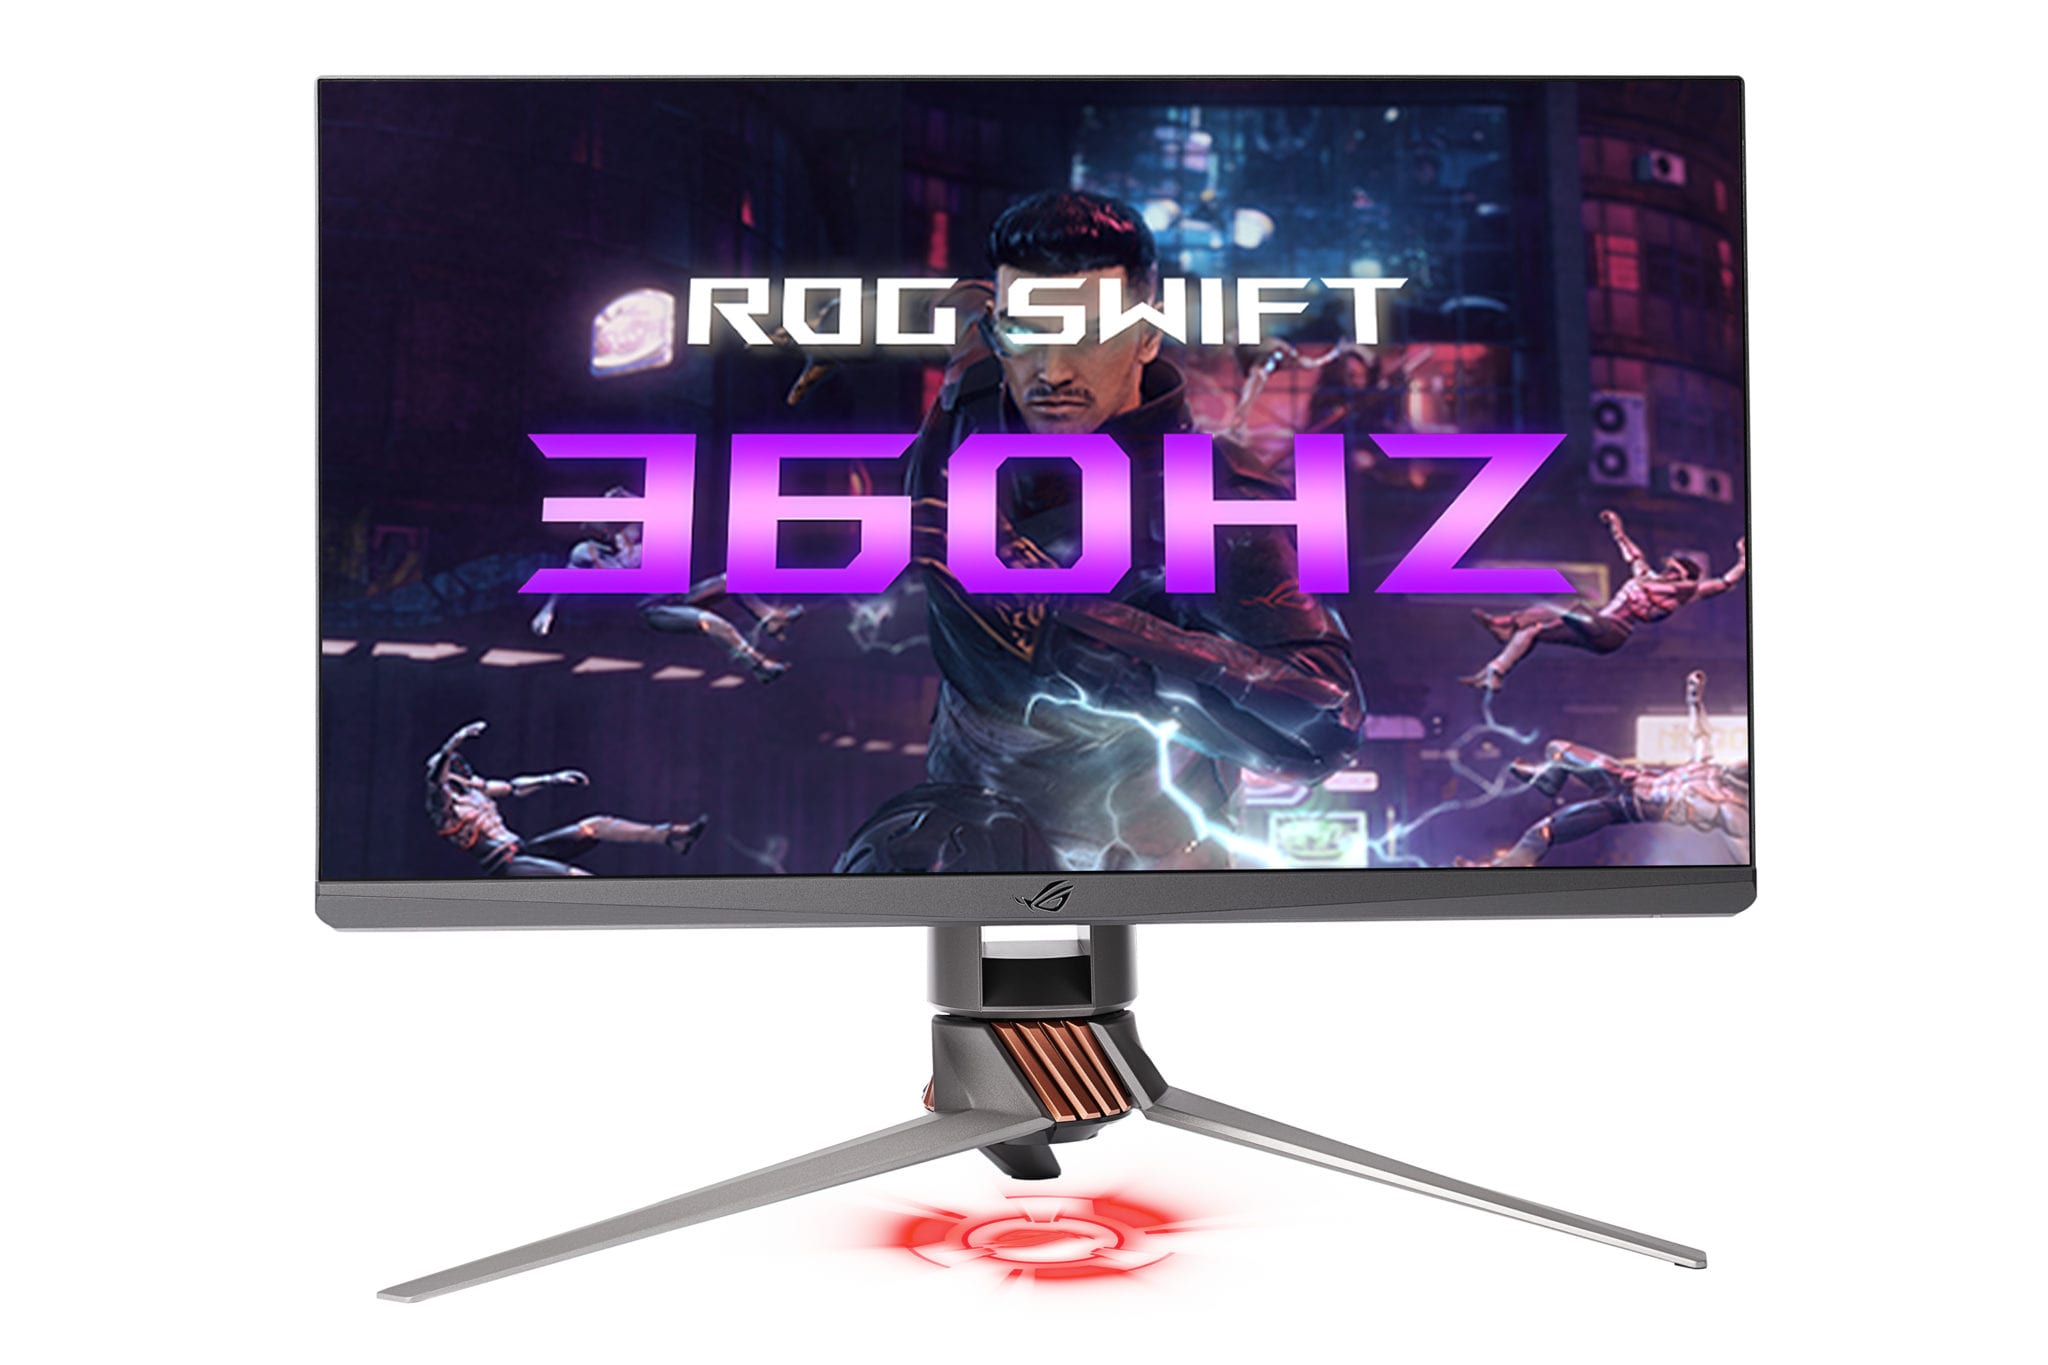 ROG Swift 360Hz, primul monitor de gaming NVIDIA G-SYNC la 360Hz